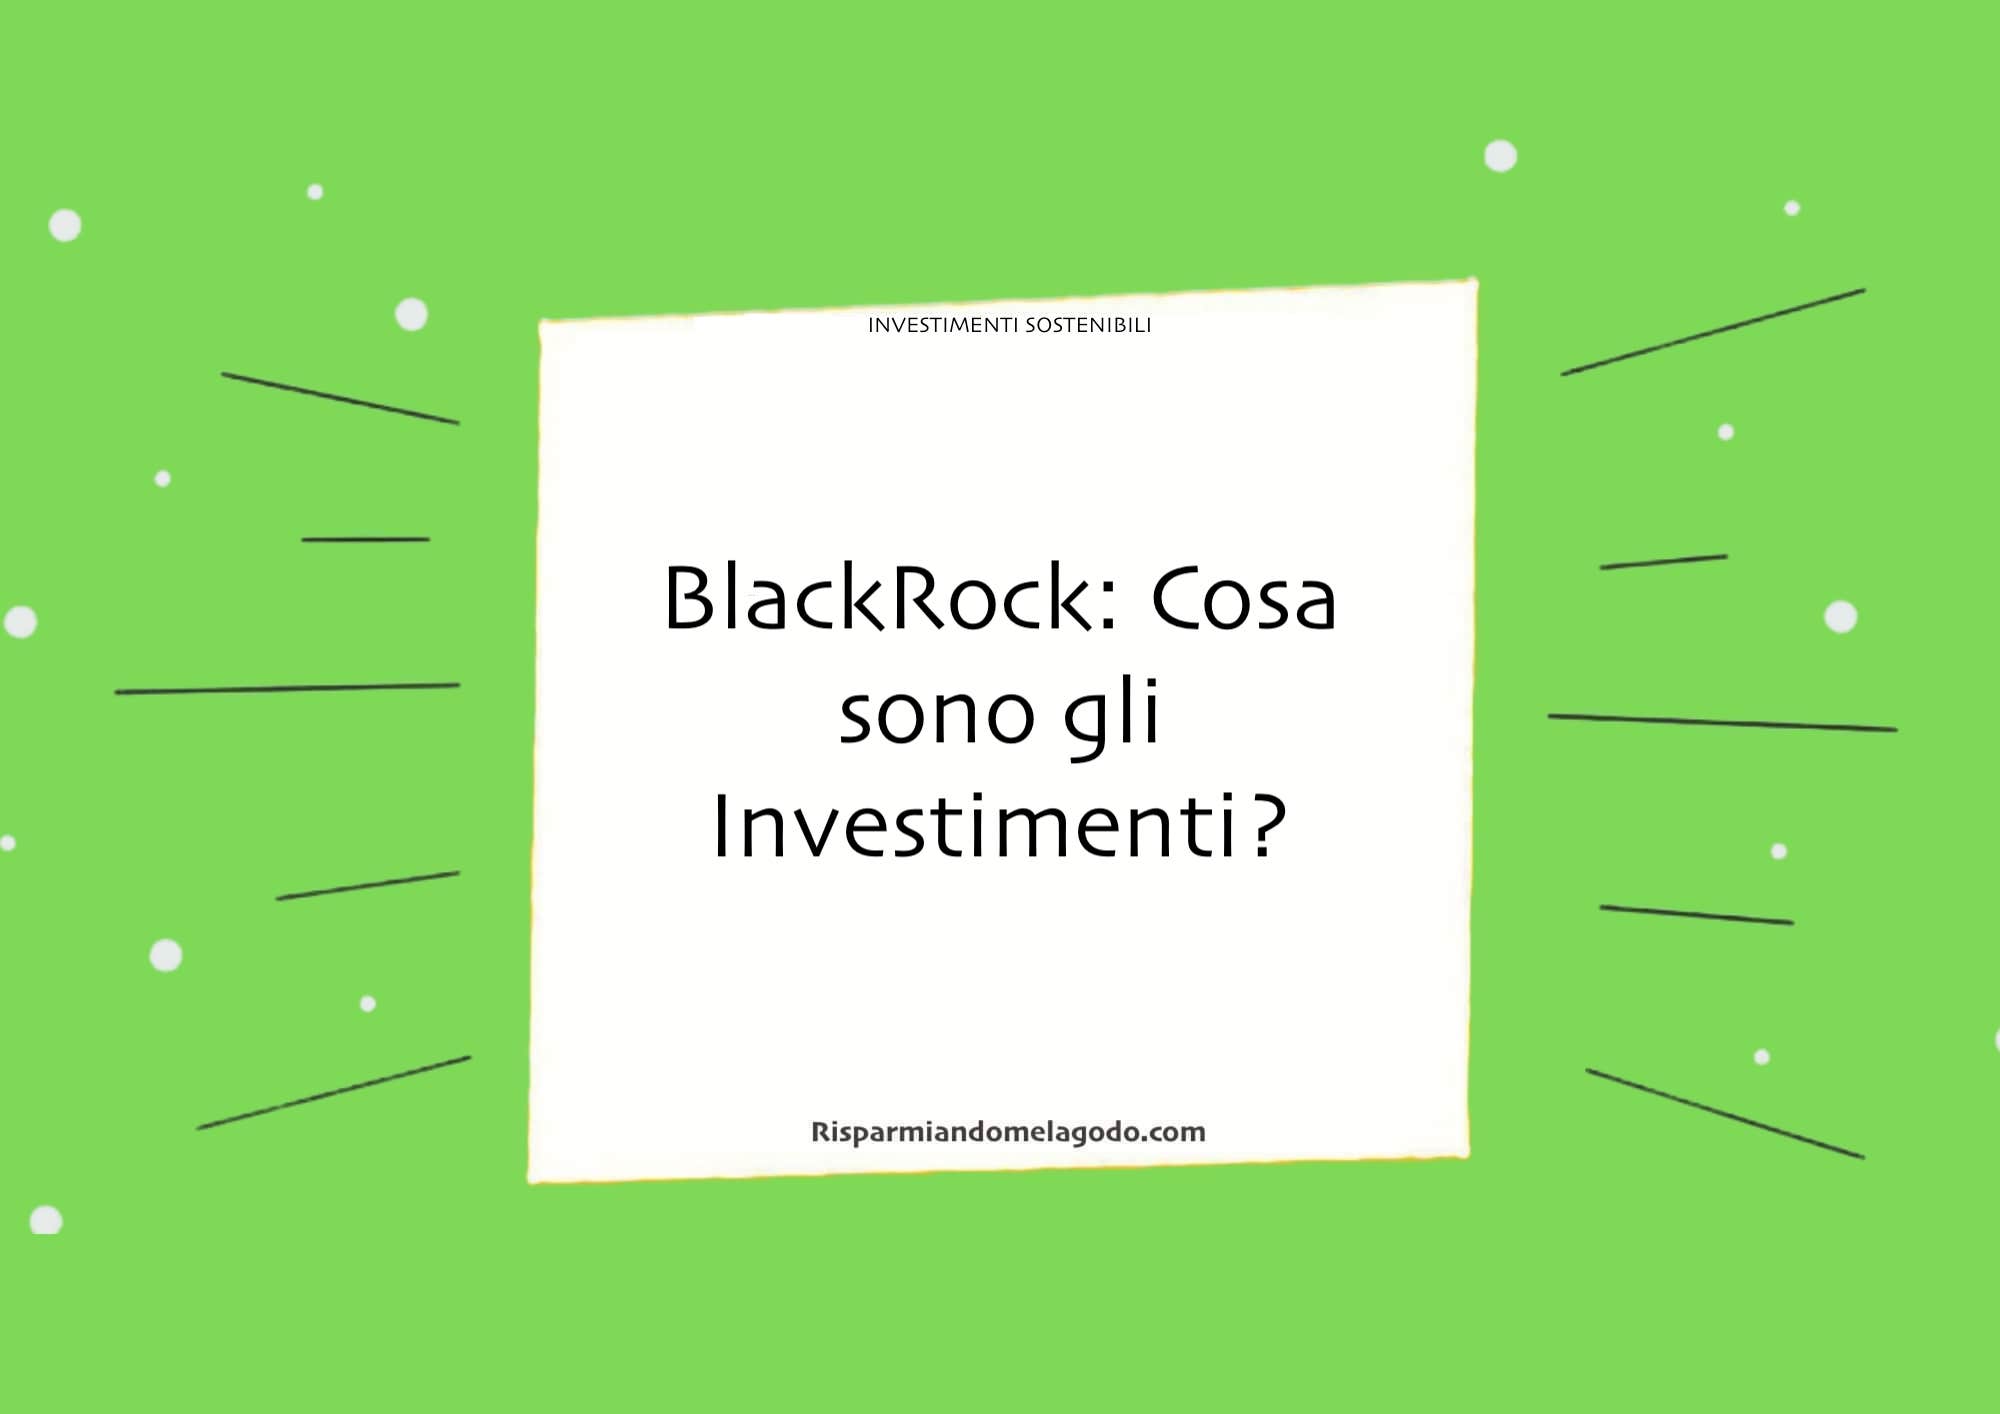 BlackRock: Cosa sono gli Investimenti?